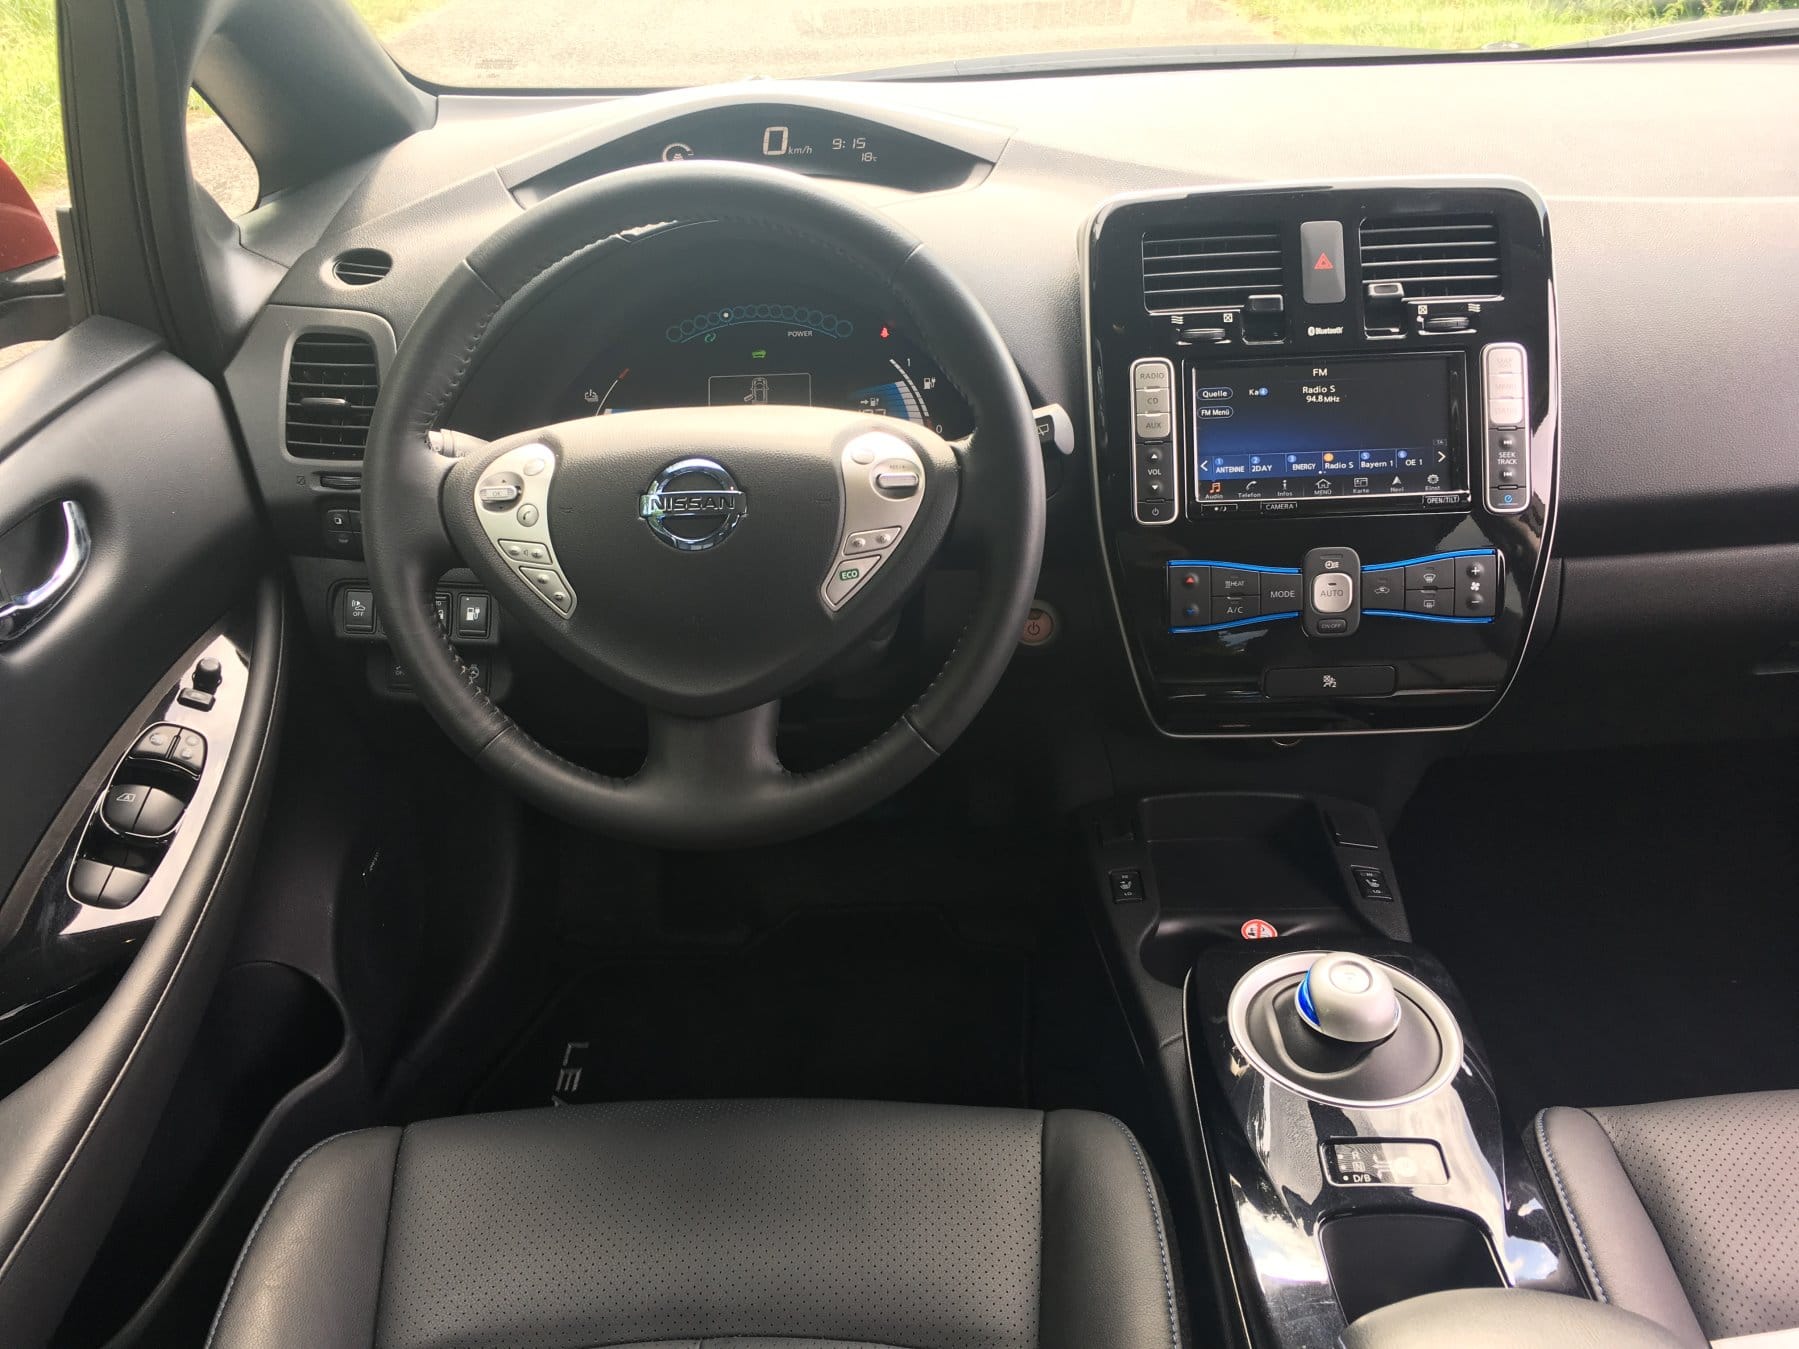 Der Nissan-Stromer unterscheidet sich im Innenraum wenig von Verbrenner-Modellen.